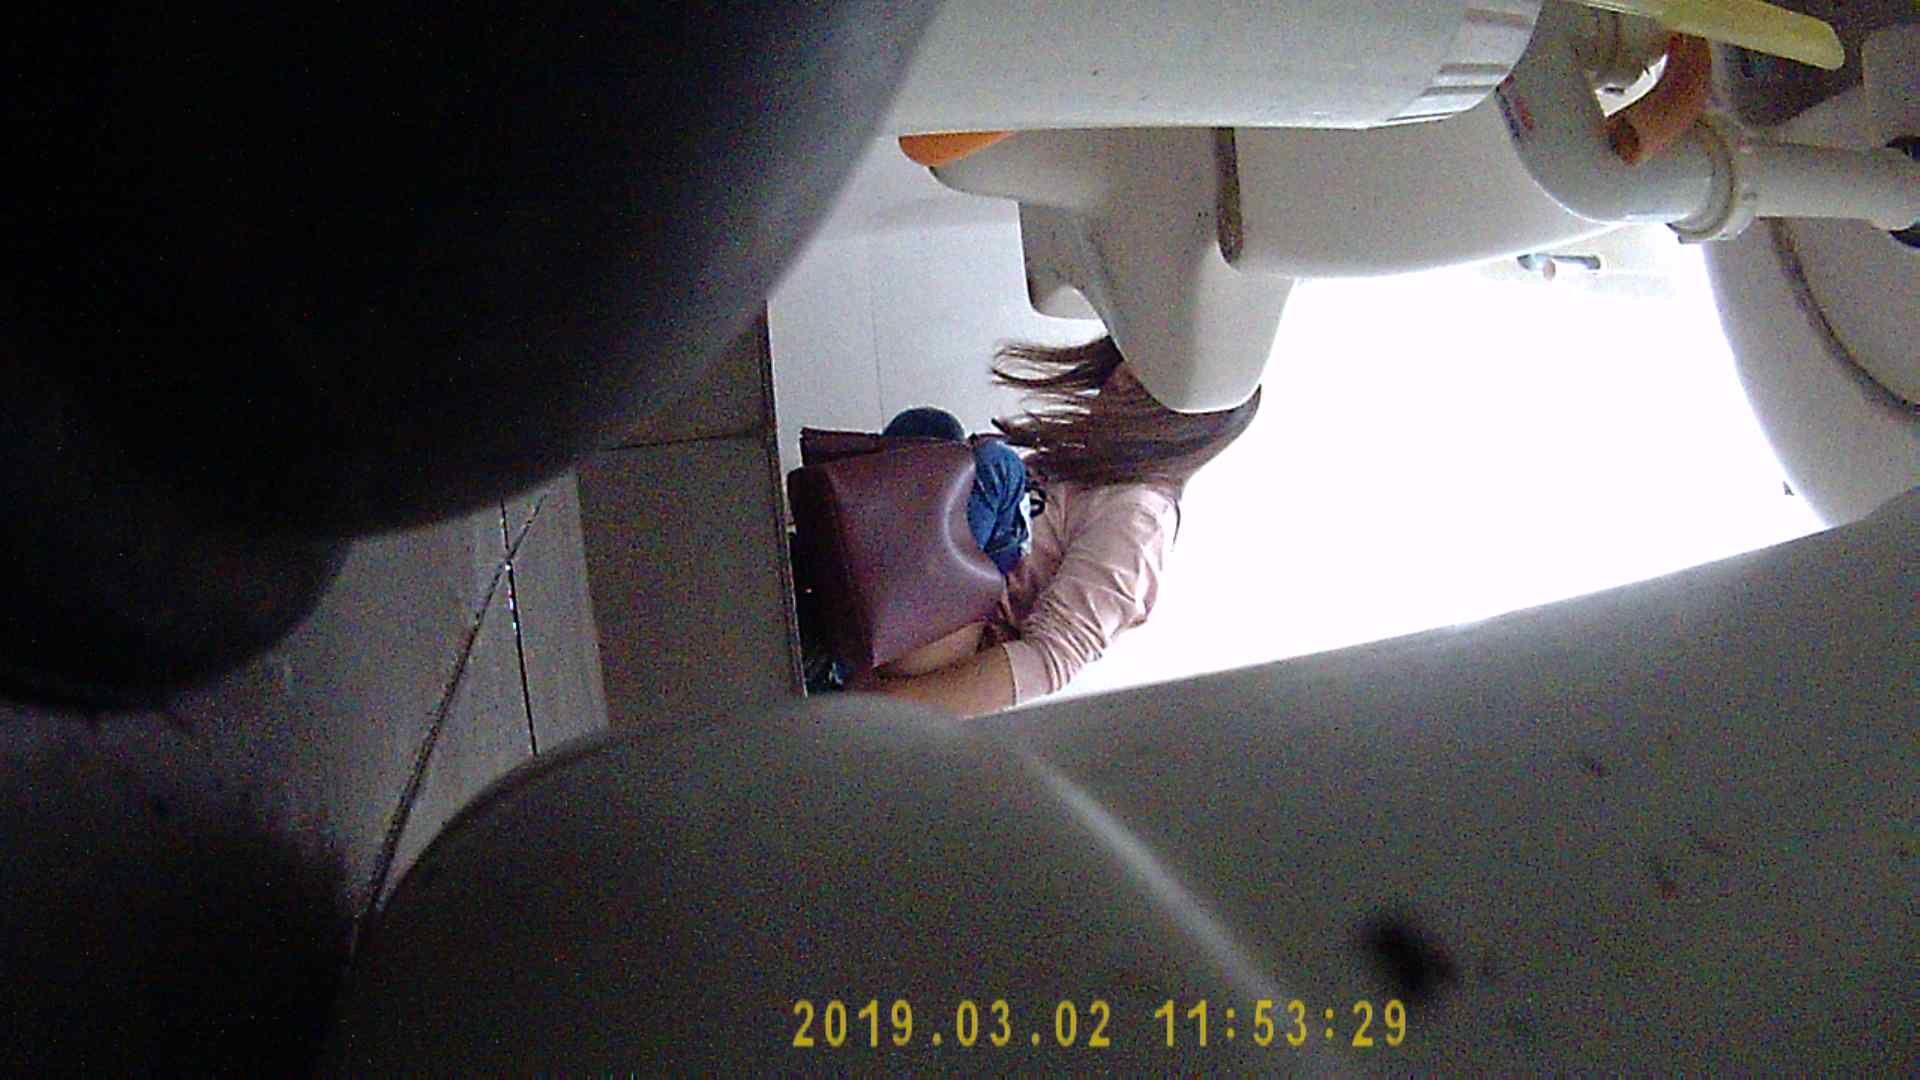 补习班卫生间暗藏摄像头偷拍补习结束的学生妹在卫生间换衣服和尿尿粉女